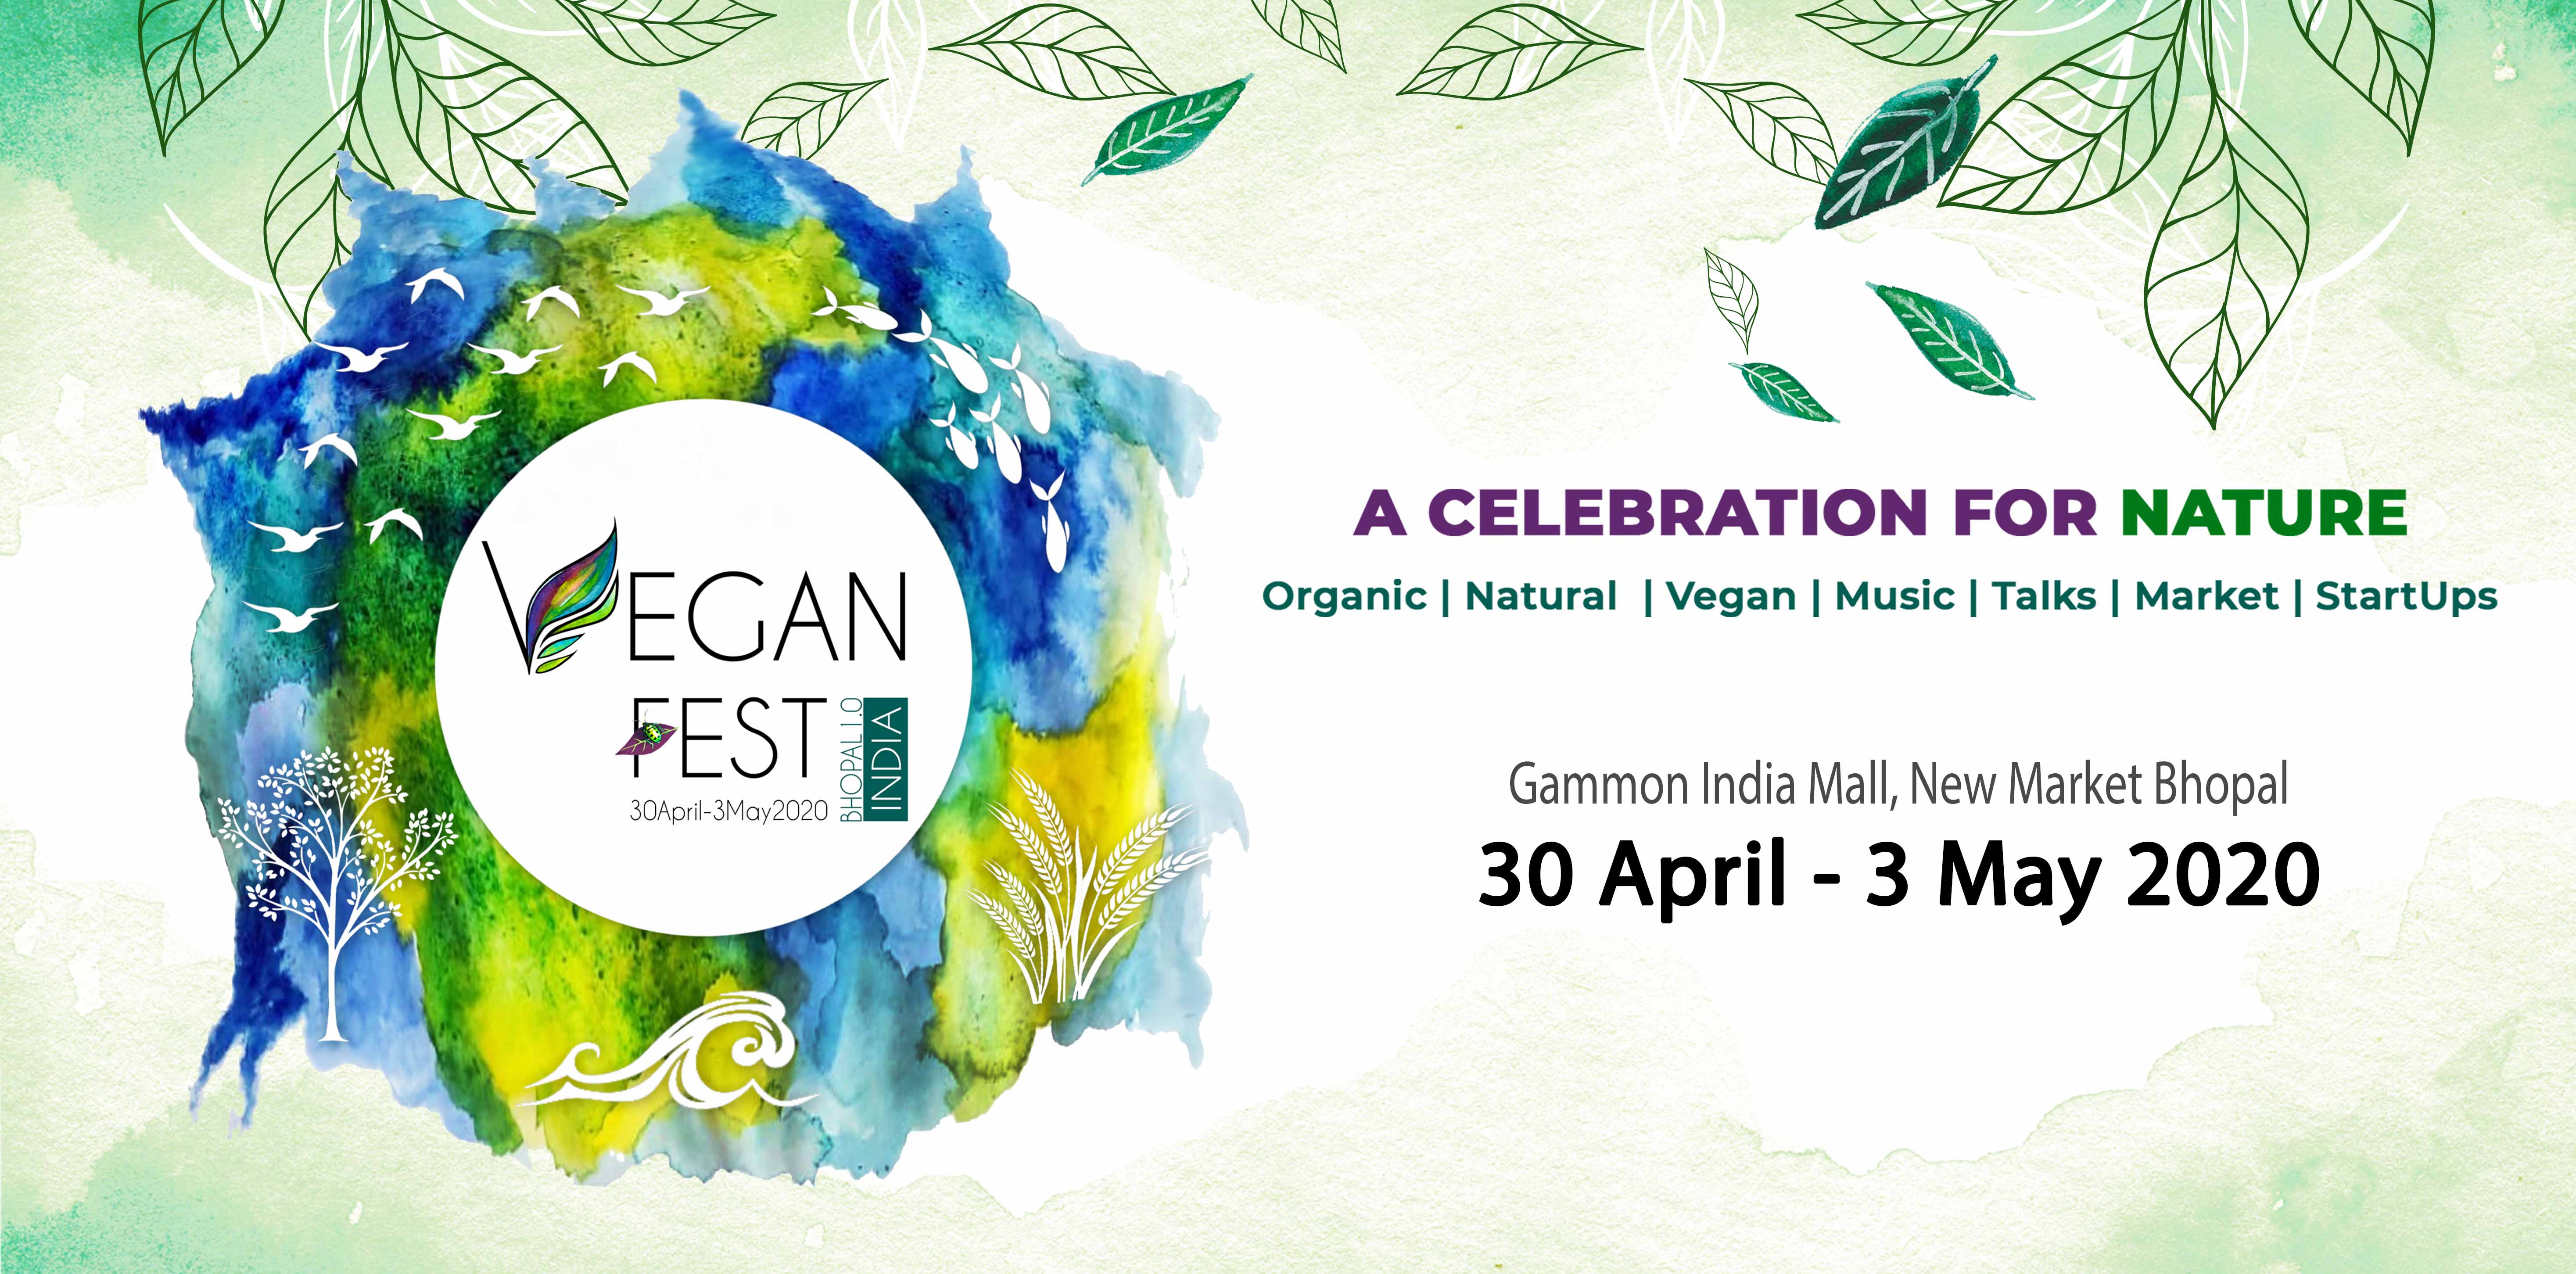 Vegan Fest India 2020